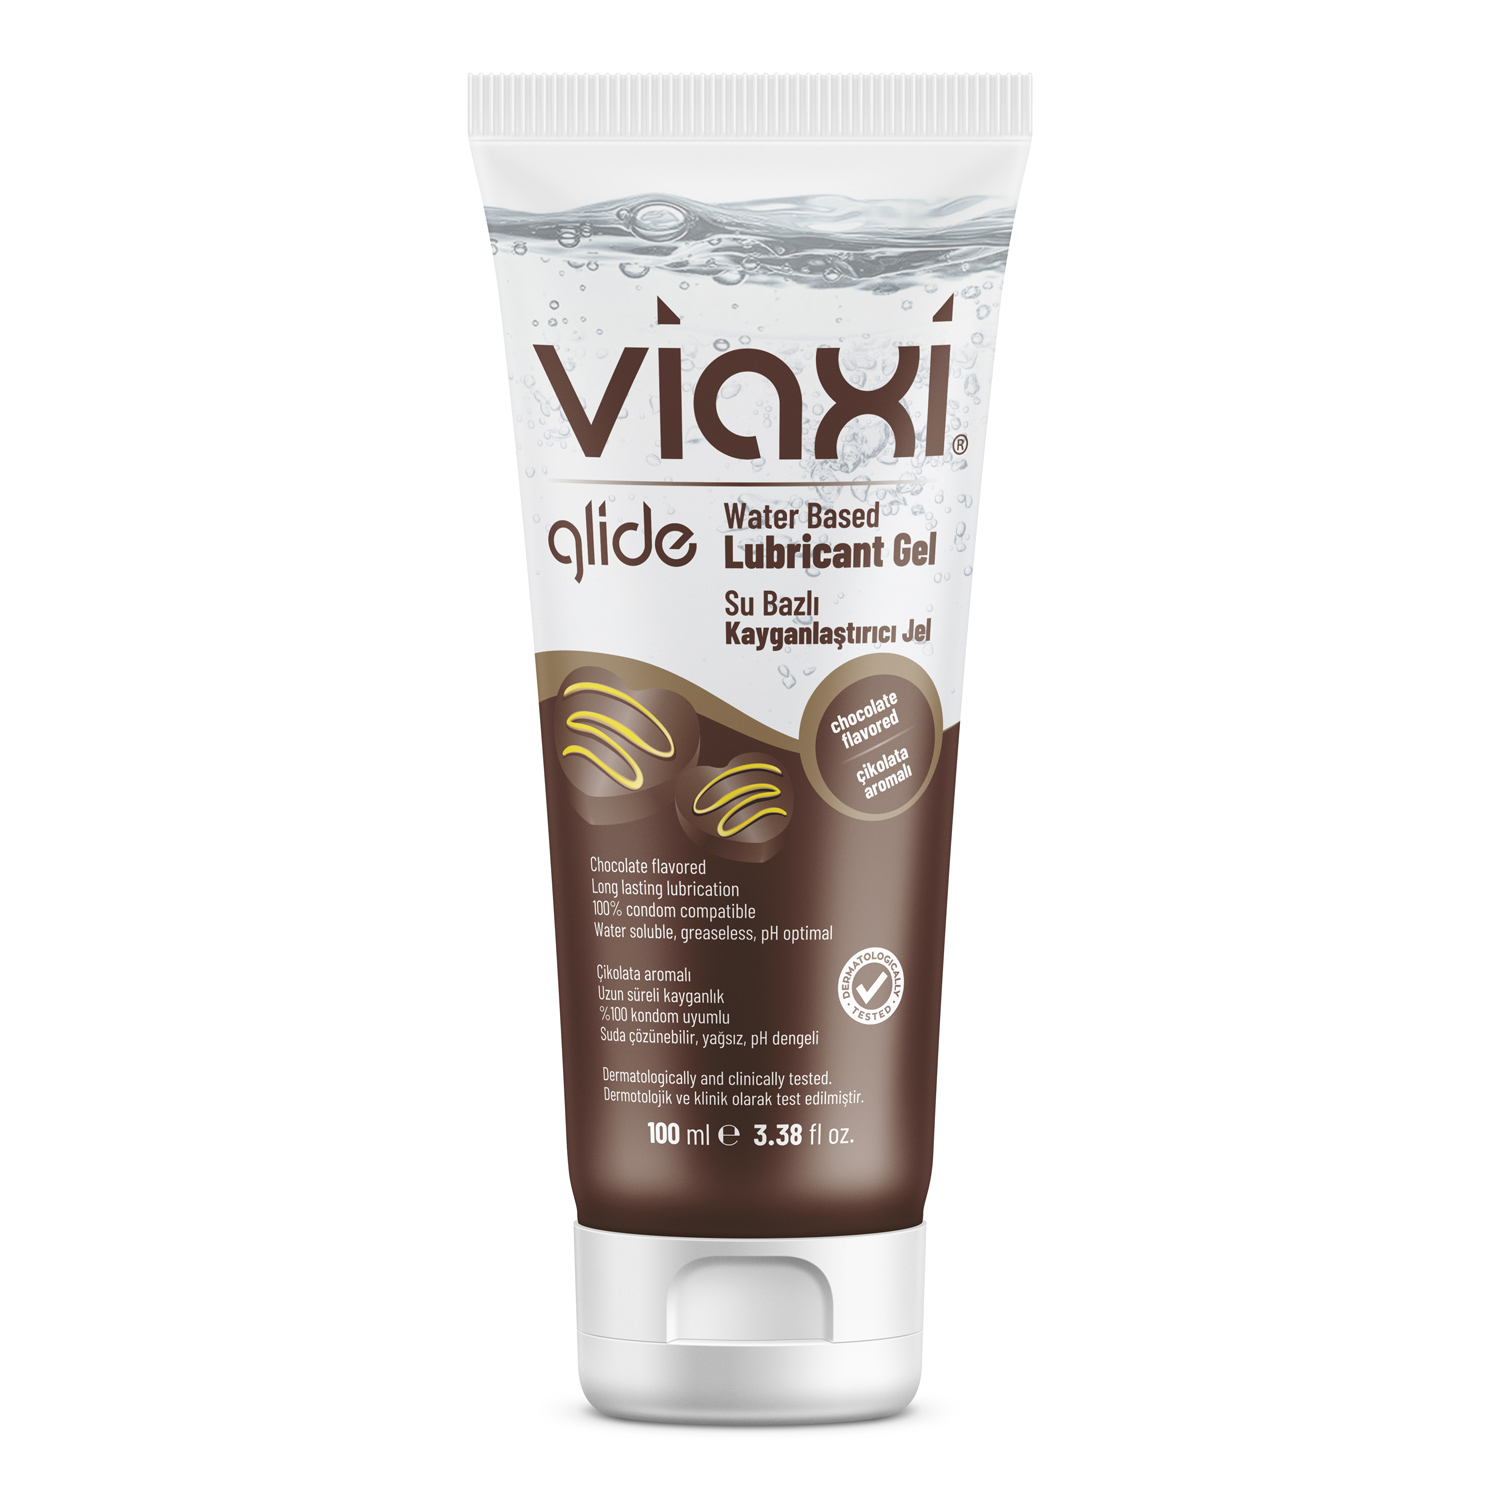 Viaxi Glide Kayganlaştırıcı Çikolatalı 100 ml